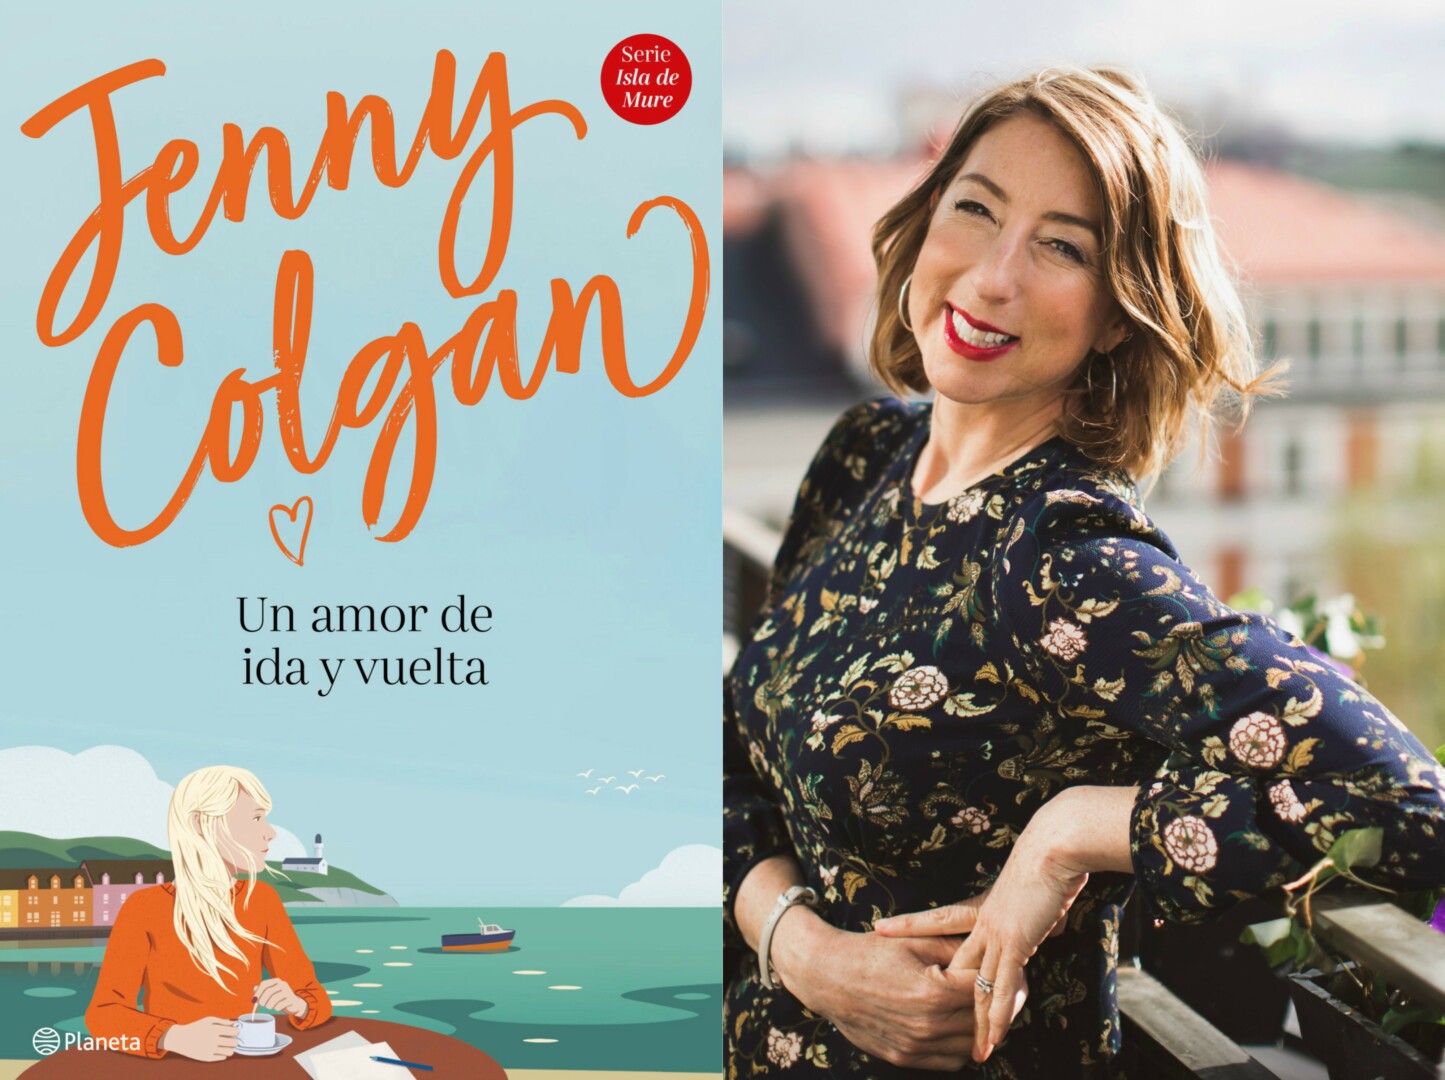 Jenny Colgan regresa a las librerías en septiembre